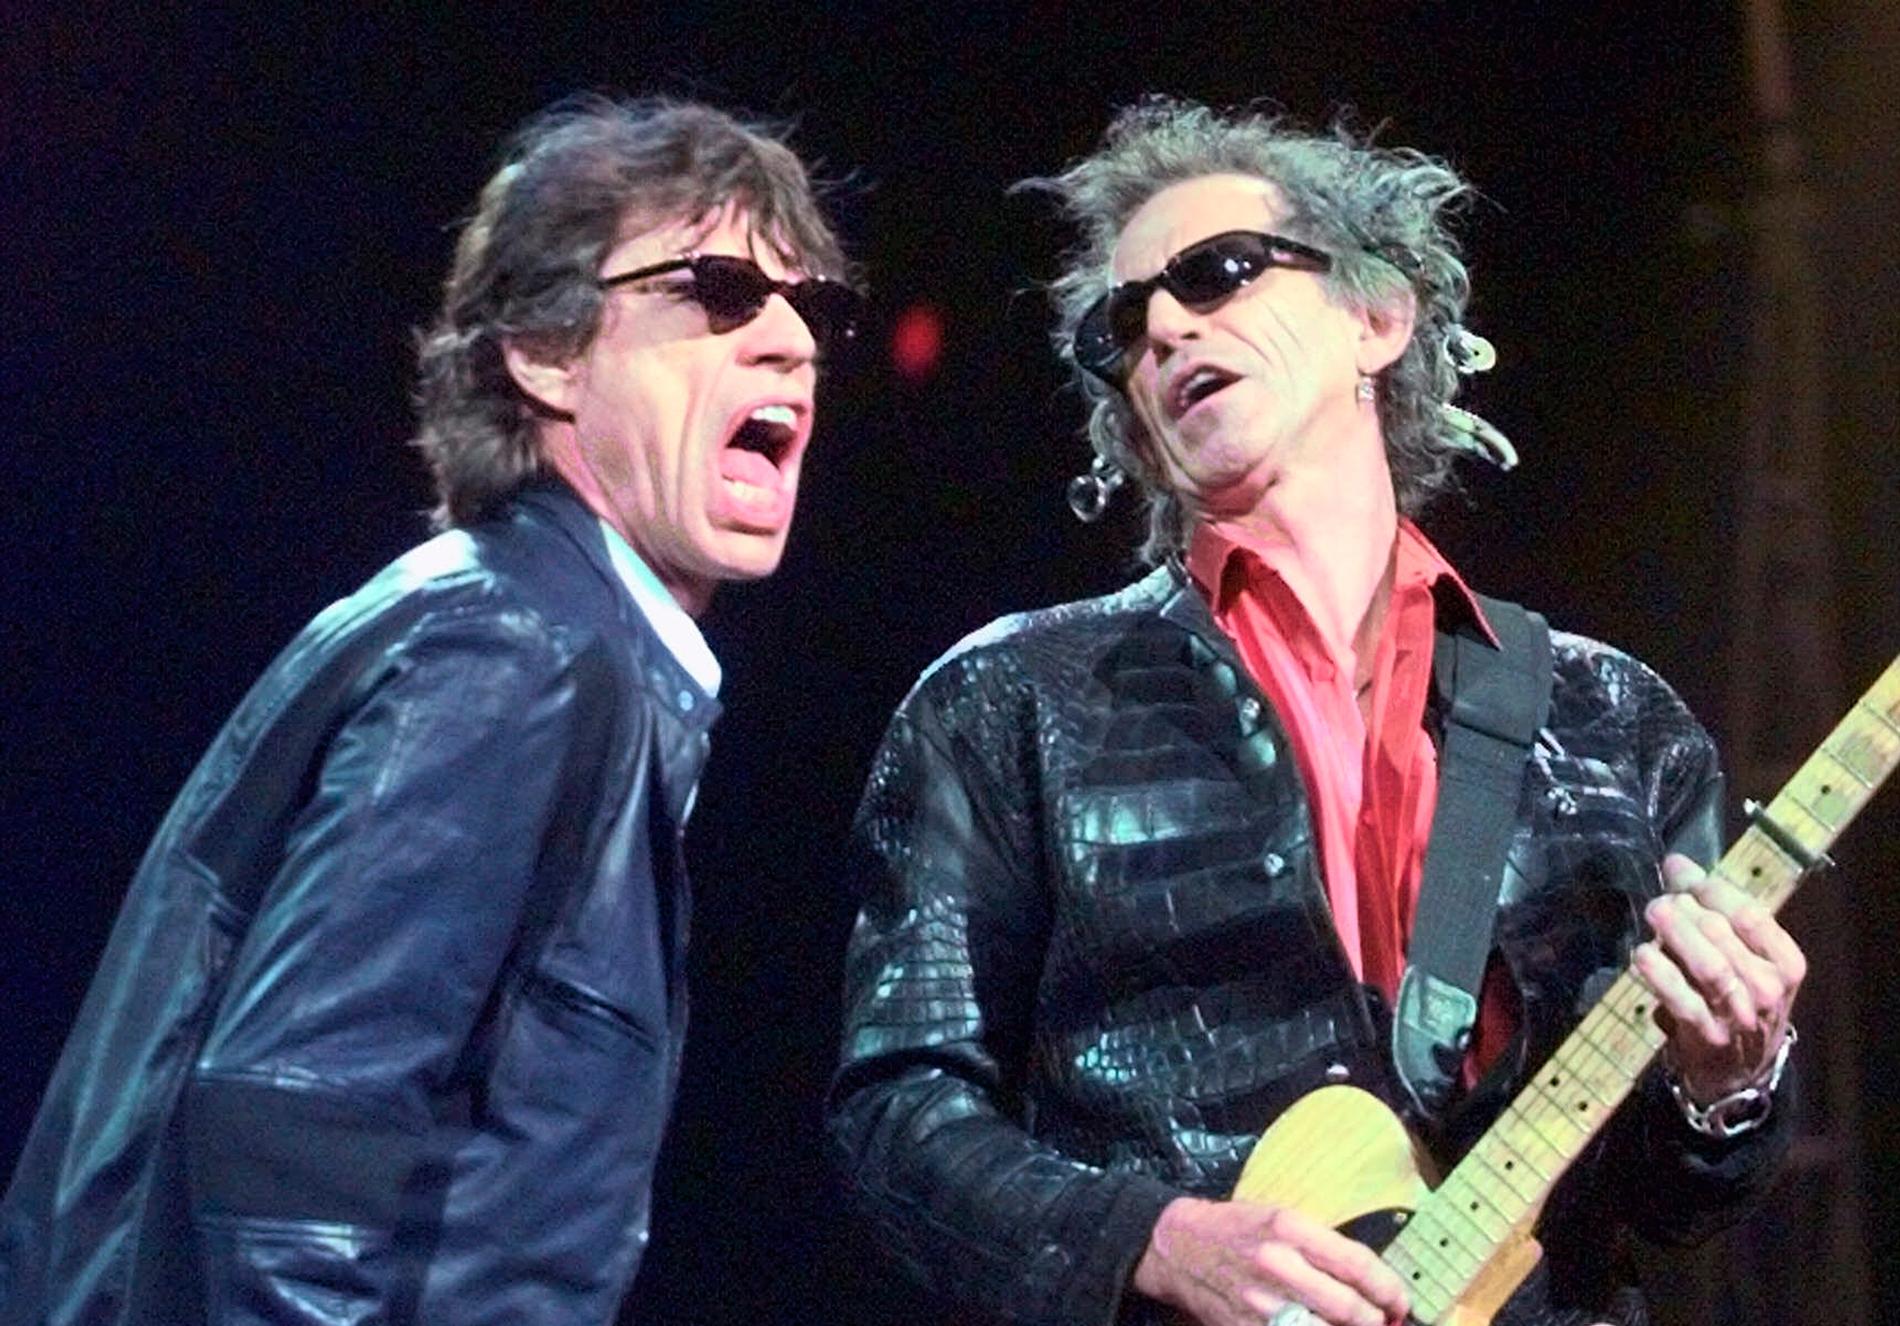 Rolling Stones sångare Mick Jagger har skrivit på Twitter att han inte stöttar Donald Trump.